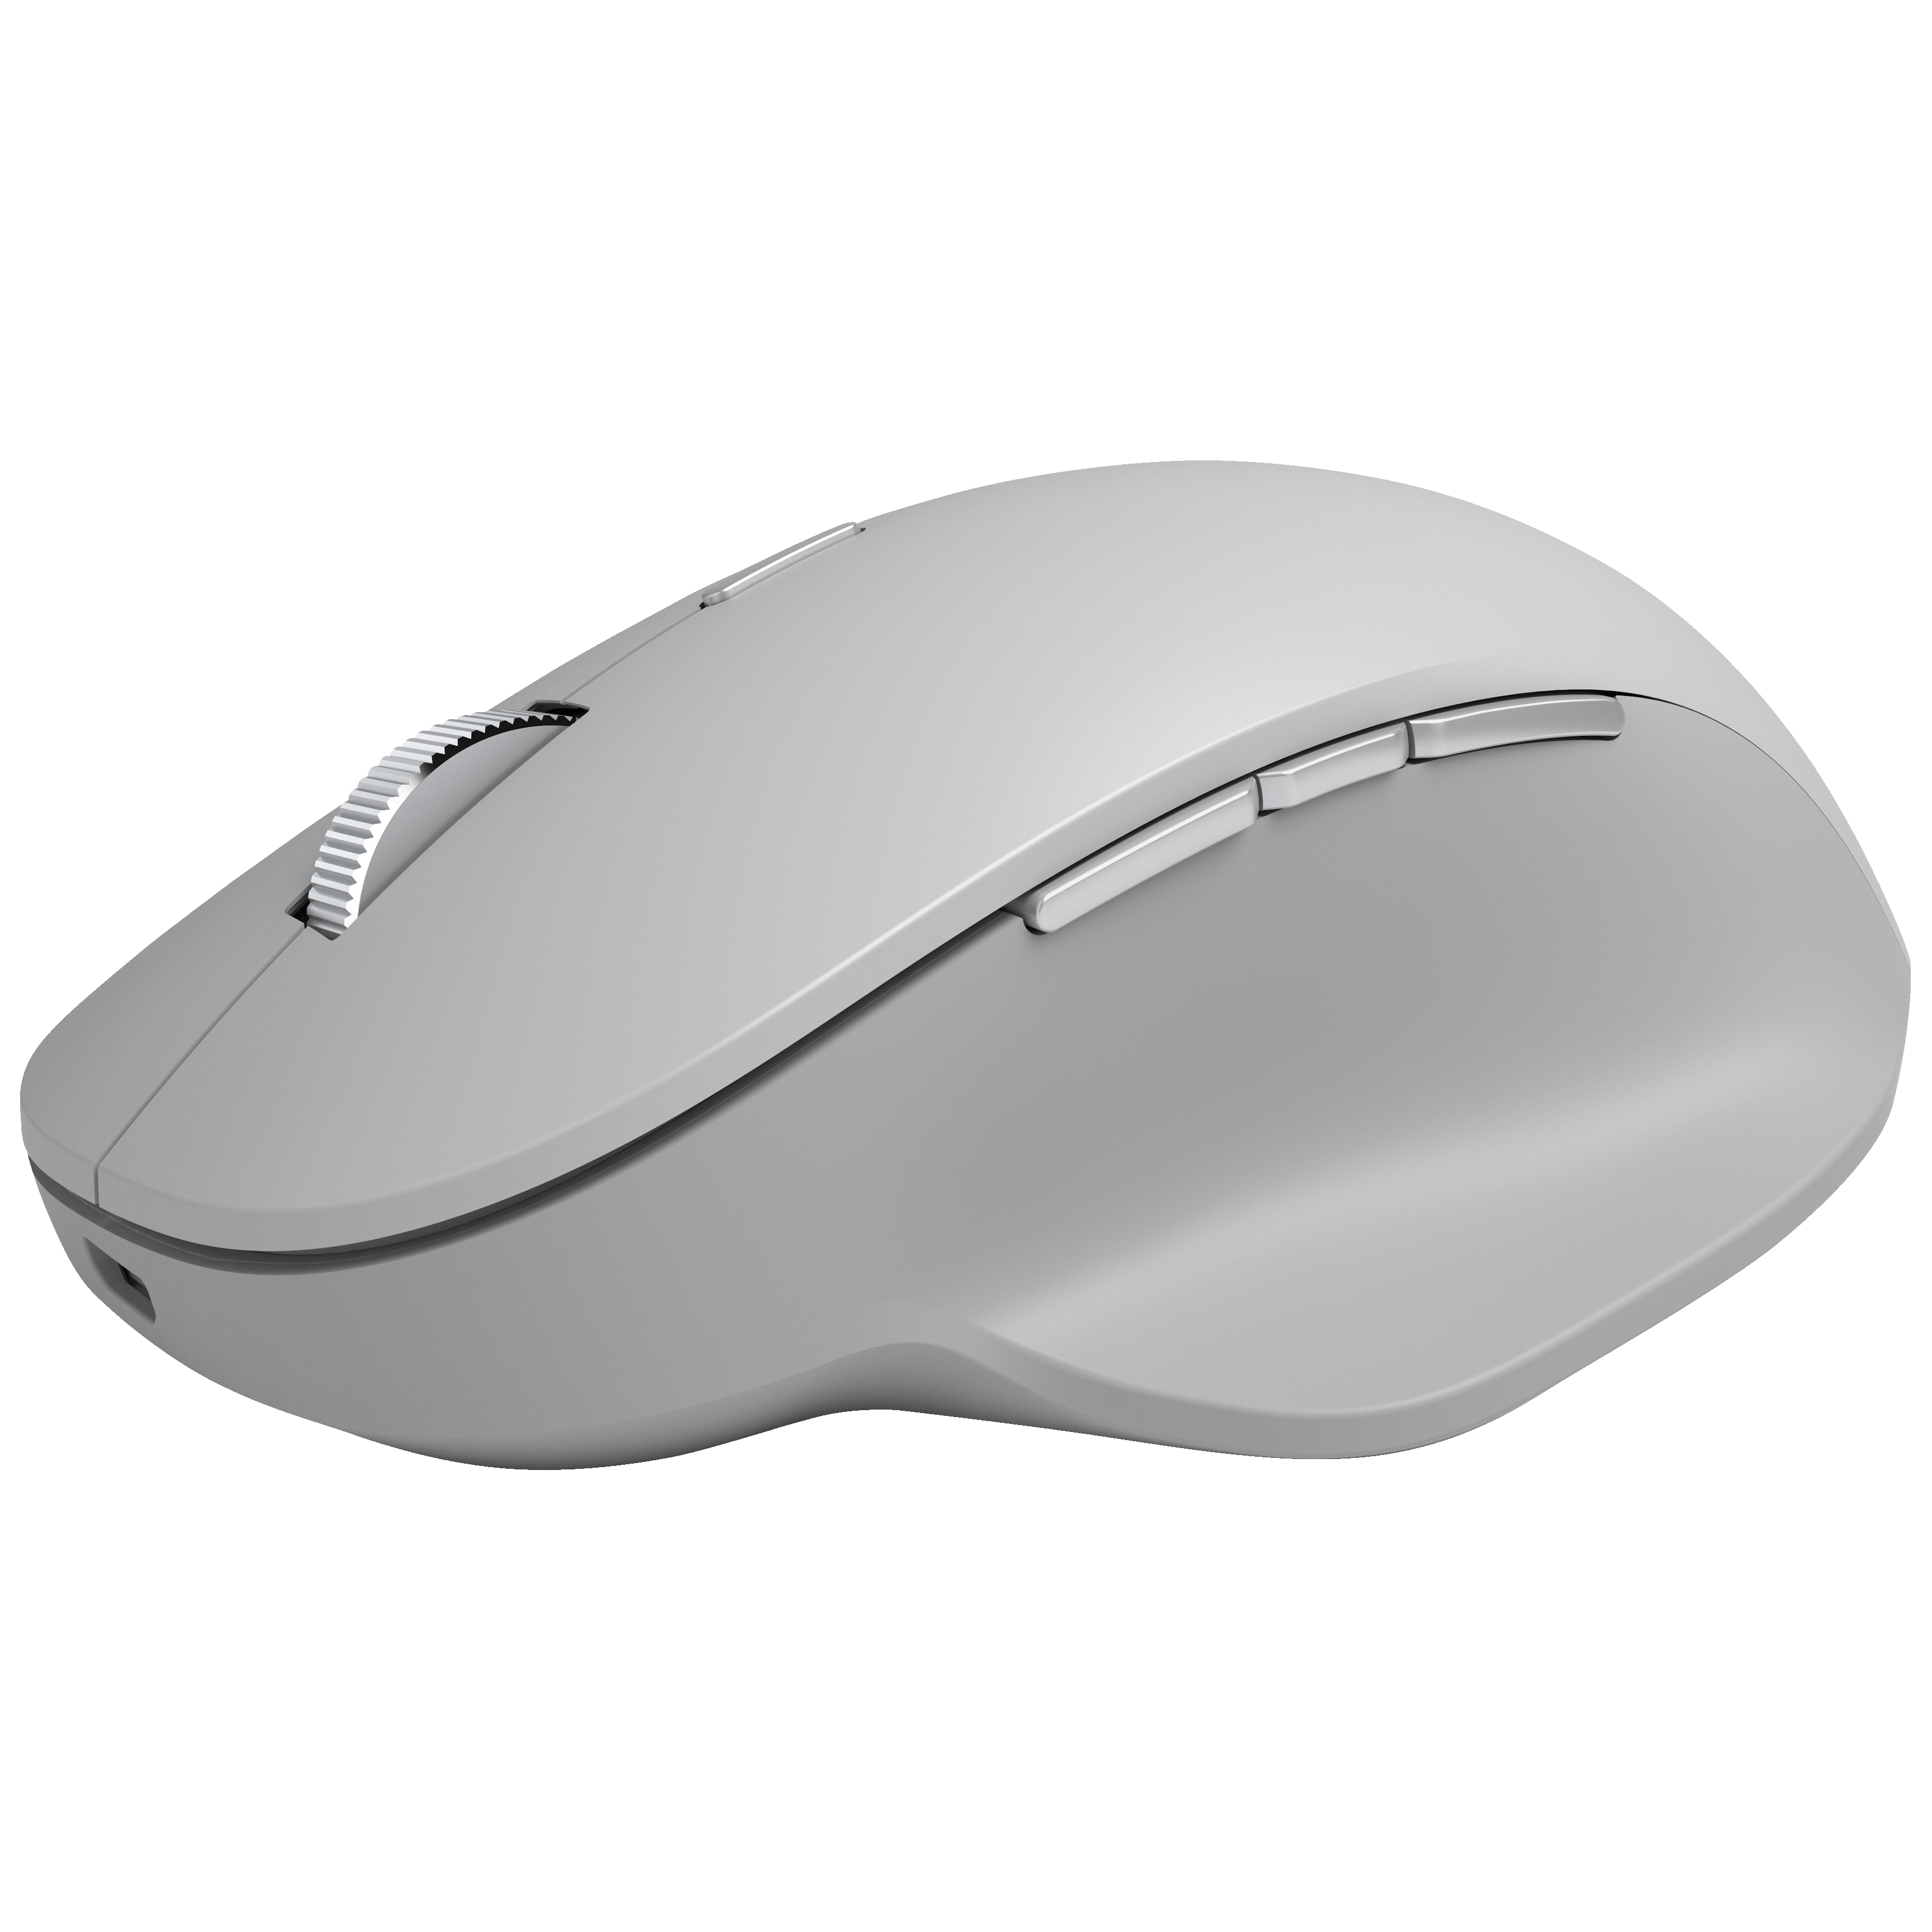 Microsoft Surface trådløs mus (grå) - Mus og tastatur - Elgiganten